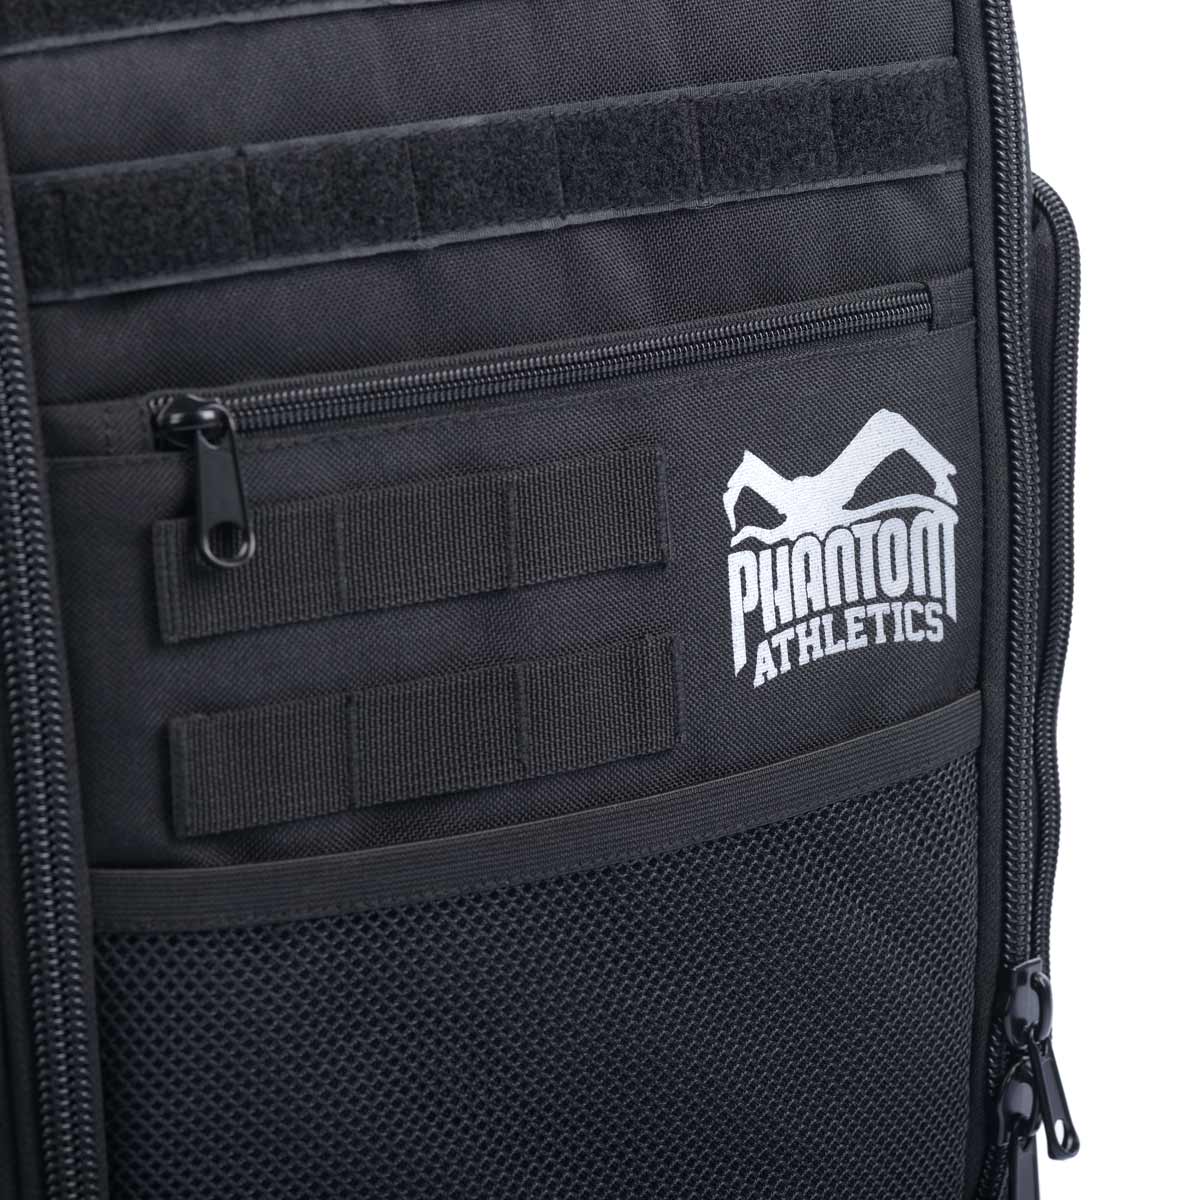 Phantom Kampfsport Rucksack Reißverschluss Details